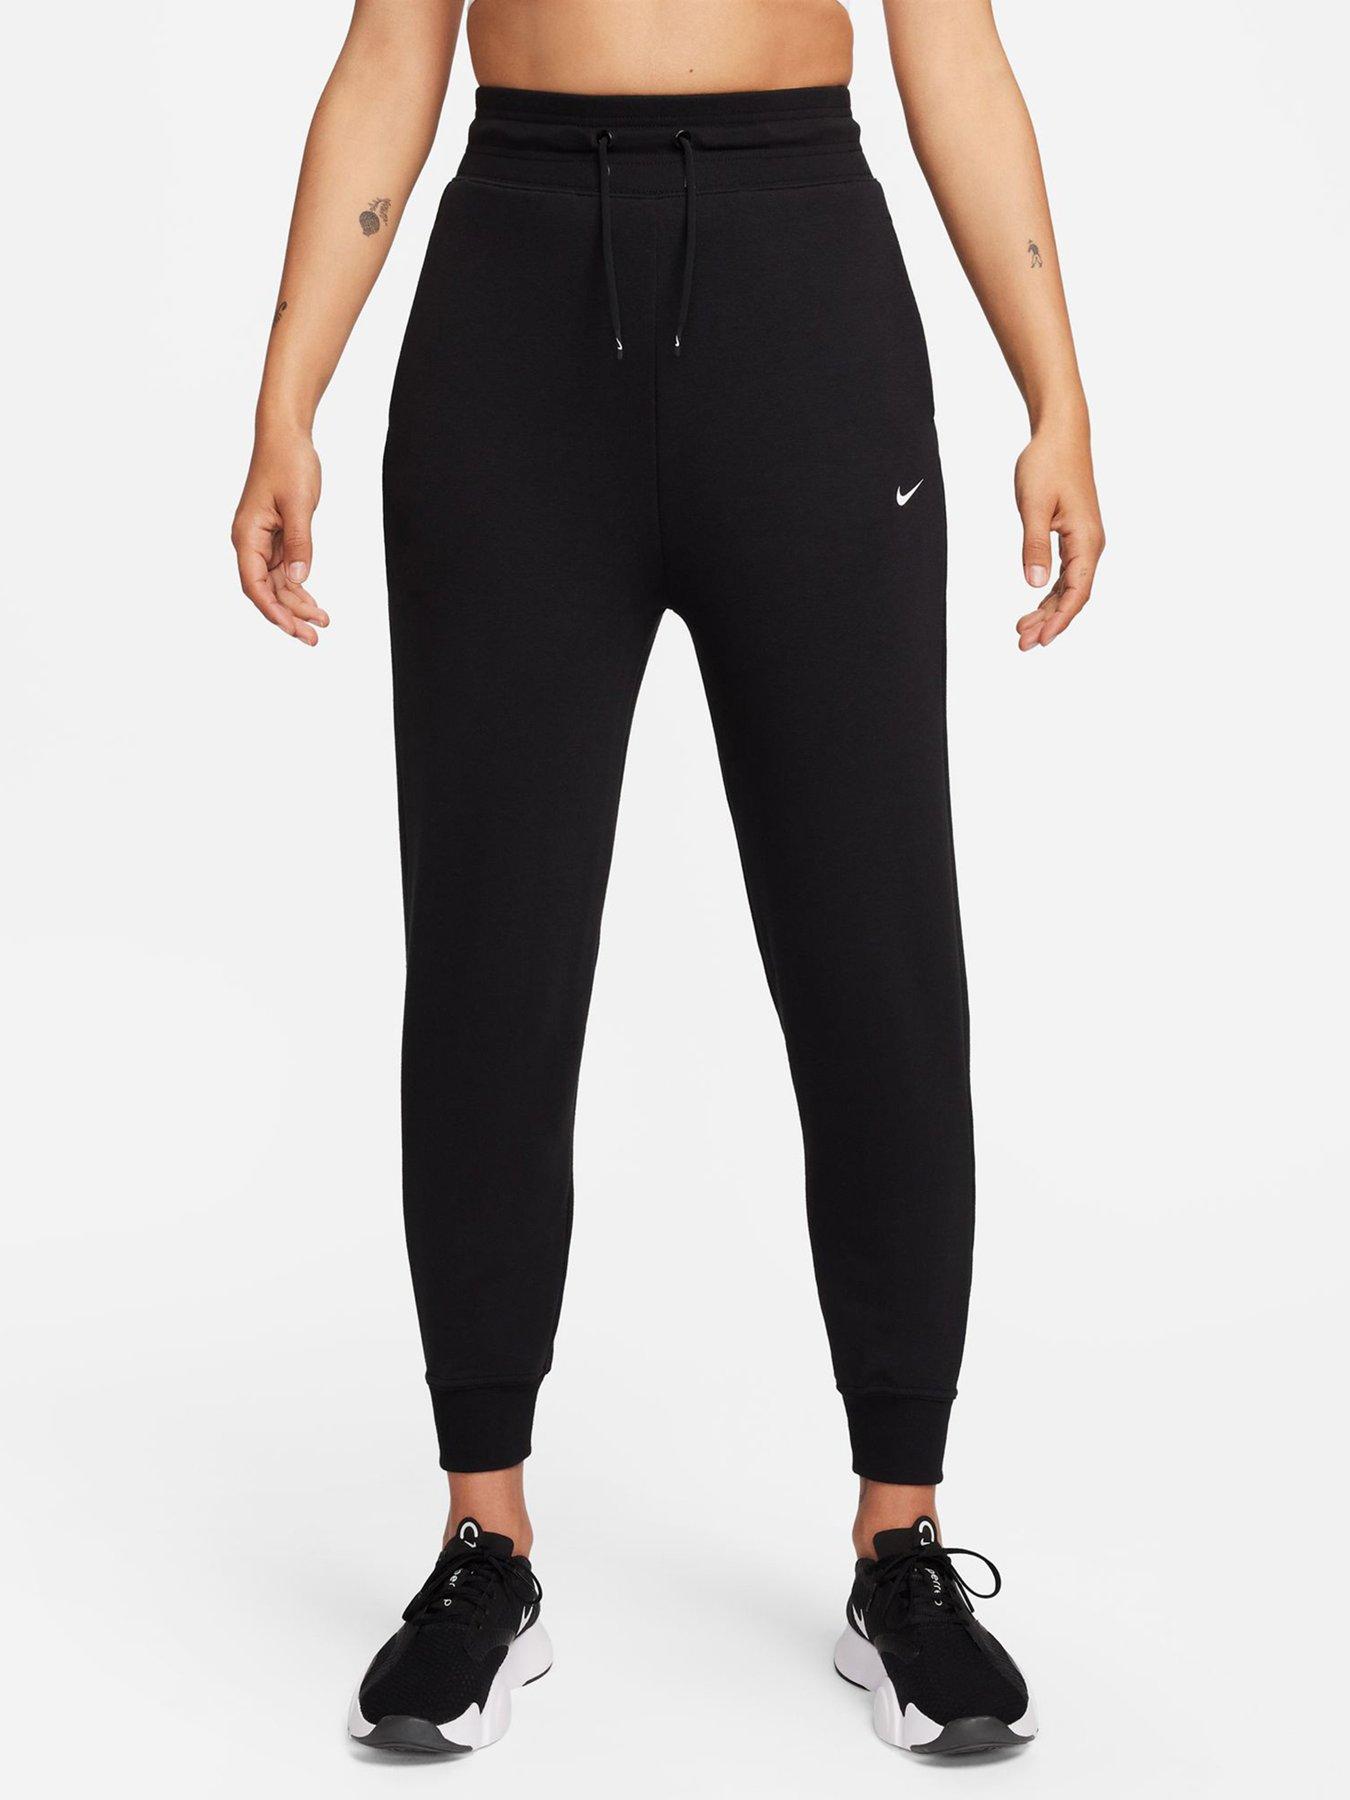 Women's Nike Bliss Victory Slim Fit Dri-Fit Flex Pants Black Sz 2X